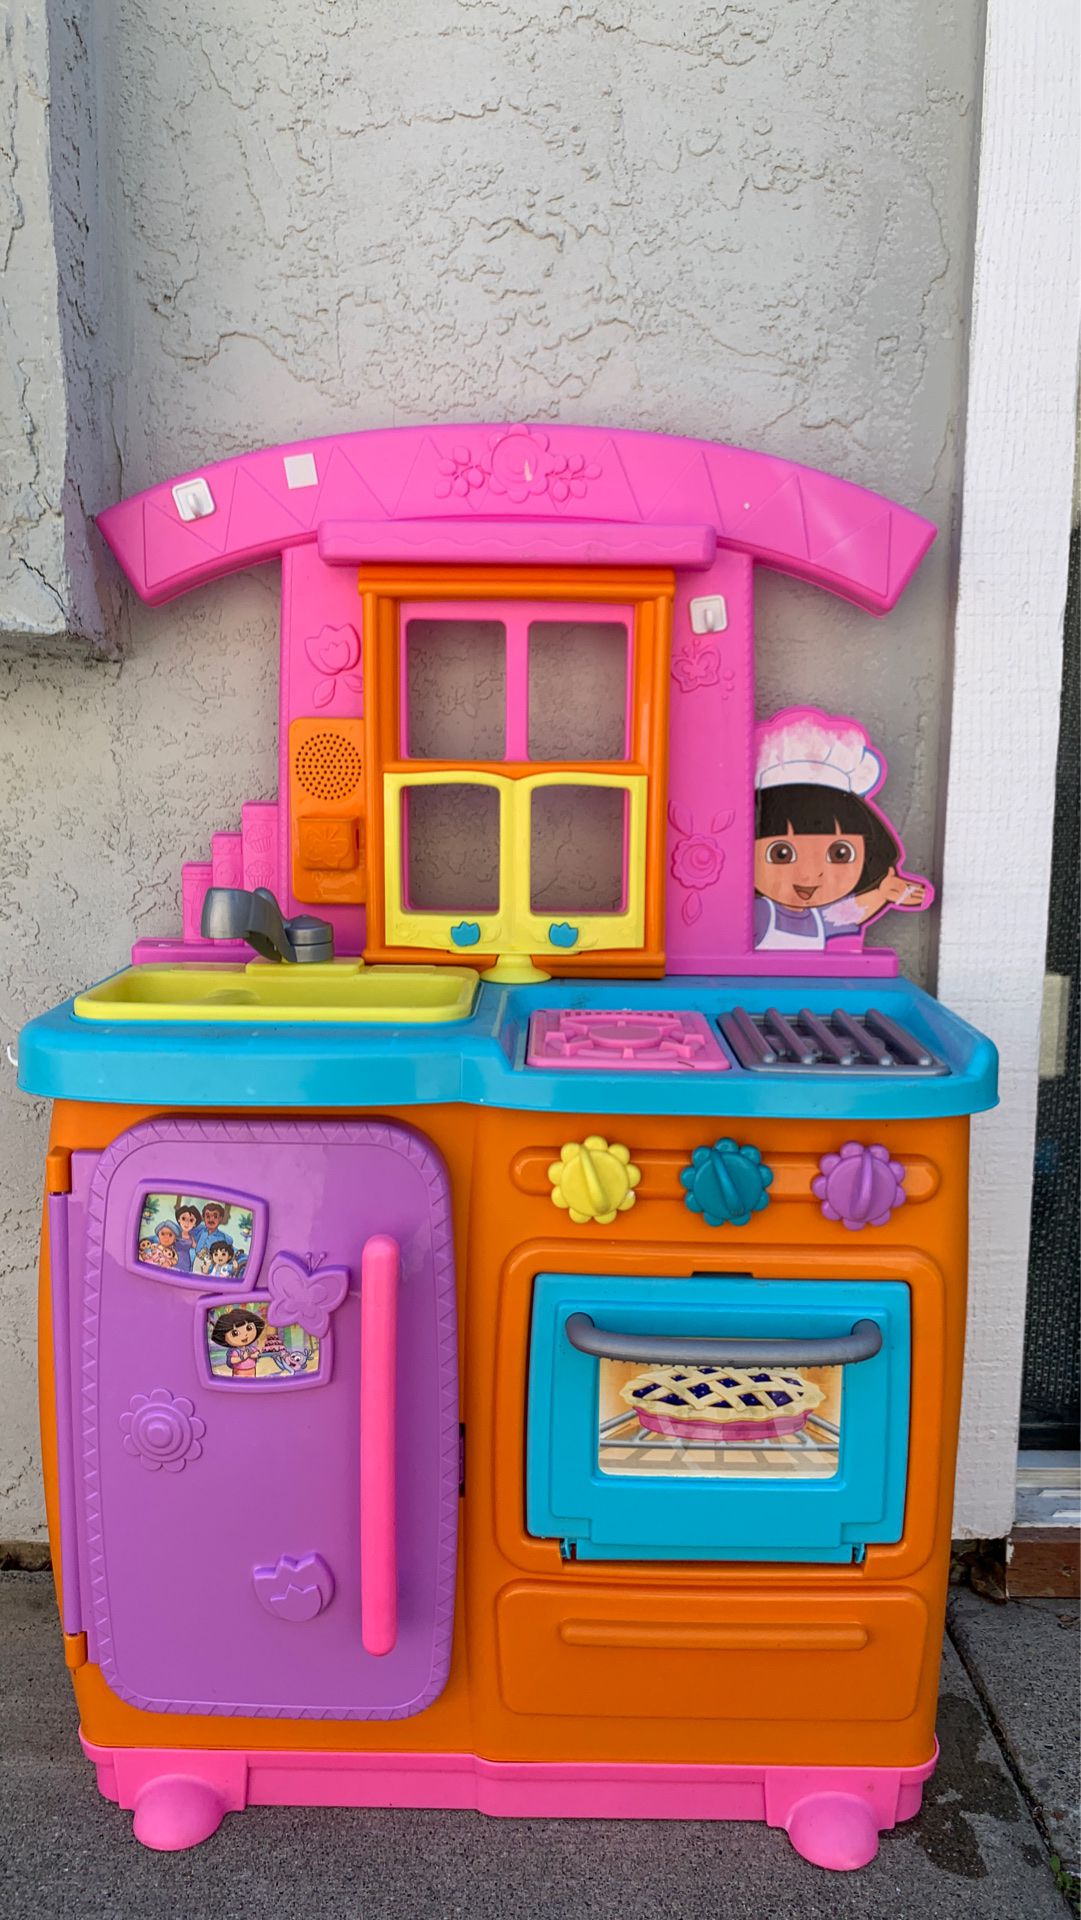 Dora play kitchen